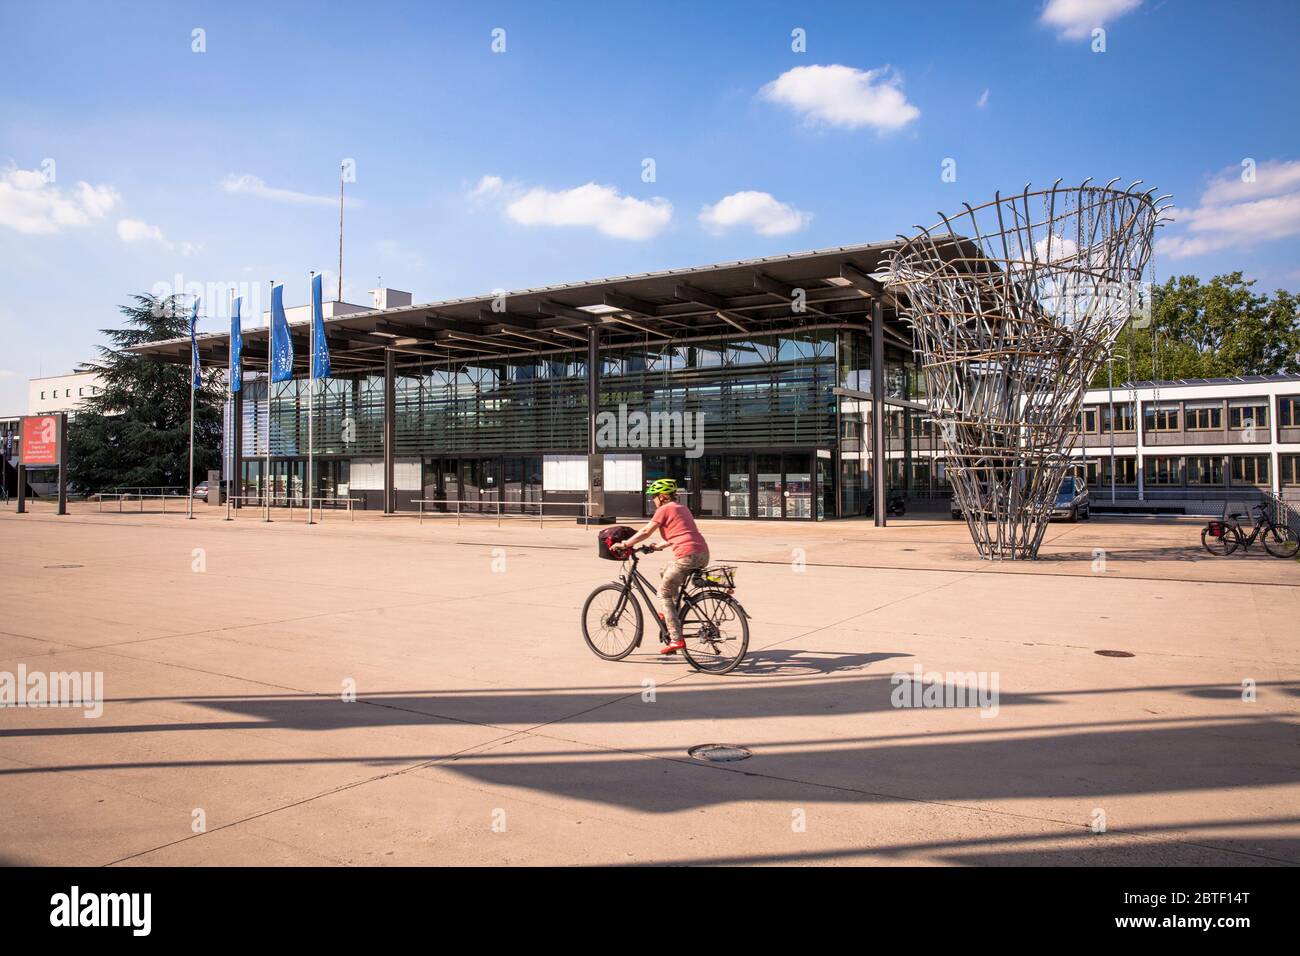 Der alte Plenarsaal des Deutschen Bundestages, heute Teil des Weltkonferenzzentrums, Platz der Vereinten Nationen, Skulptur 'Meisterhaftigkeit' von Stockfoto